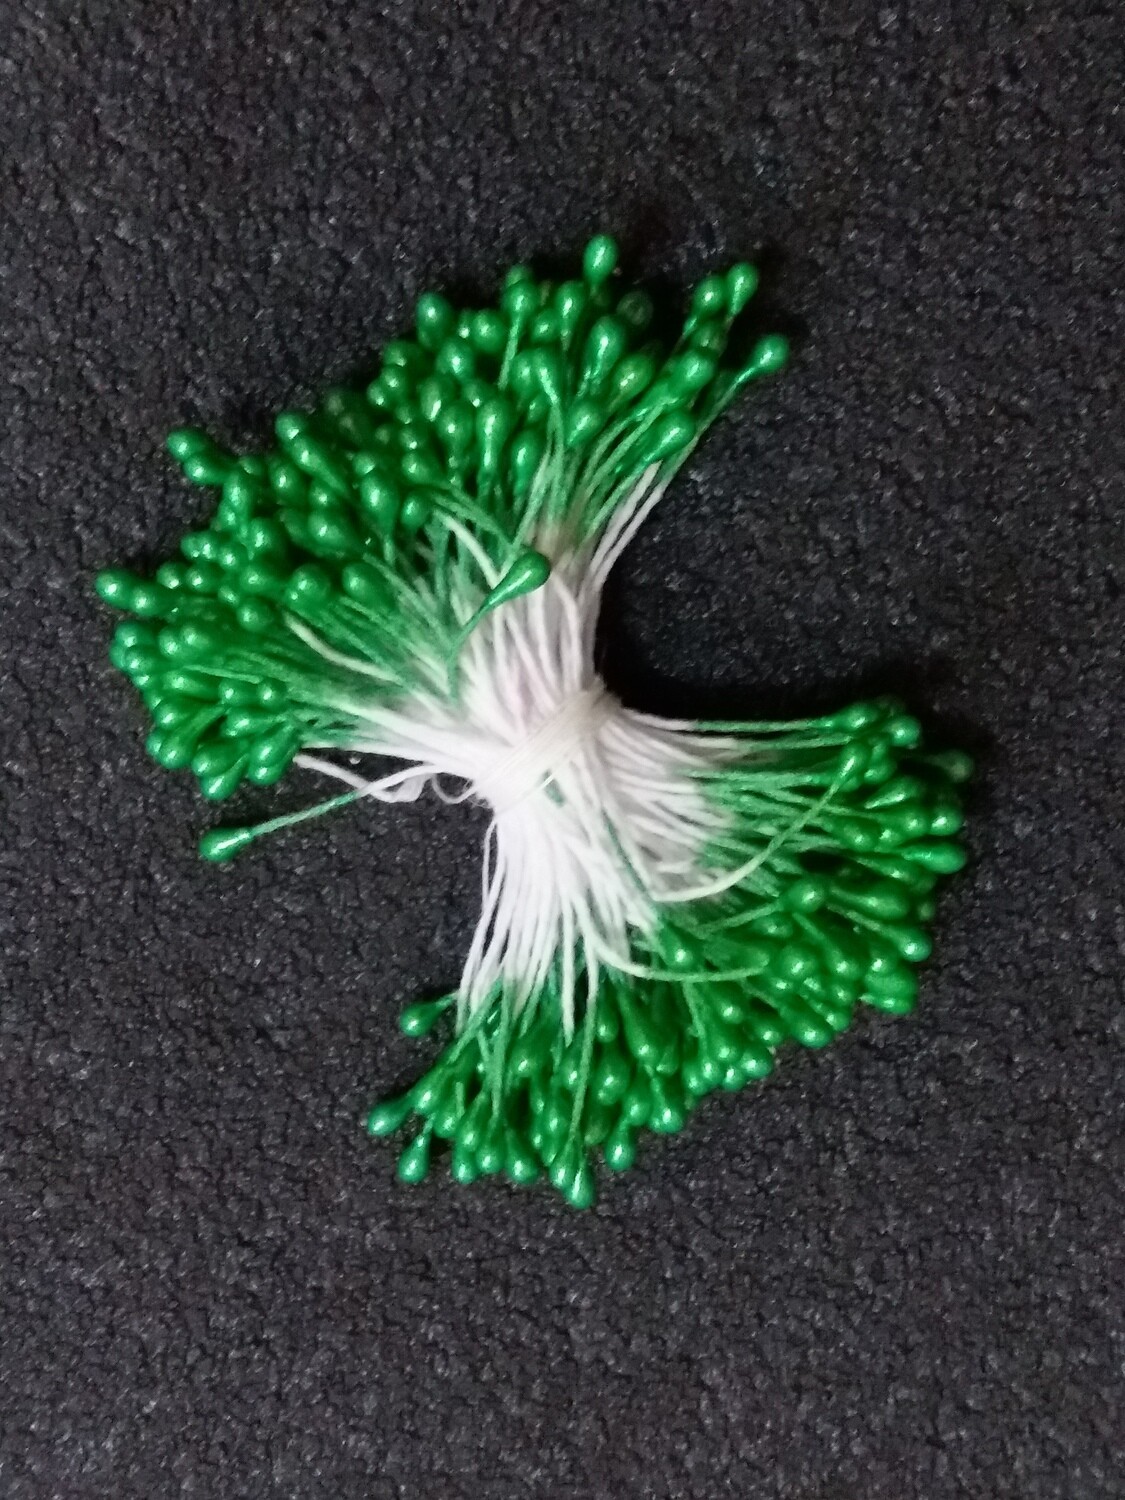 Тычинки для искусственных цветов "Капельки зеленые" (набор 170 шт) длина 6 см Пластик, текстиль